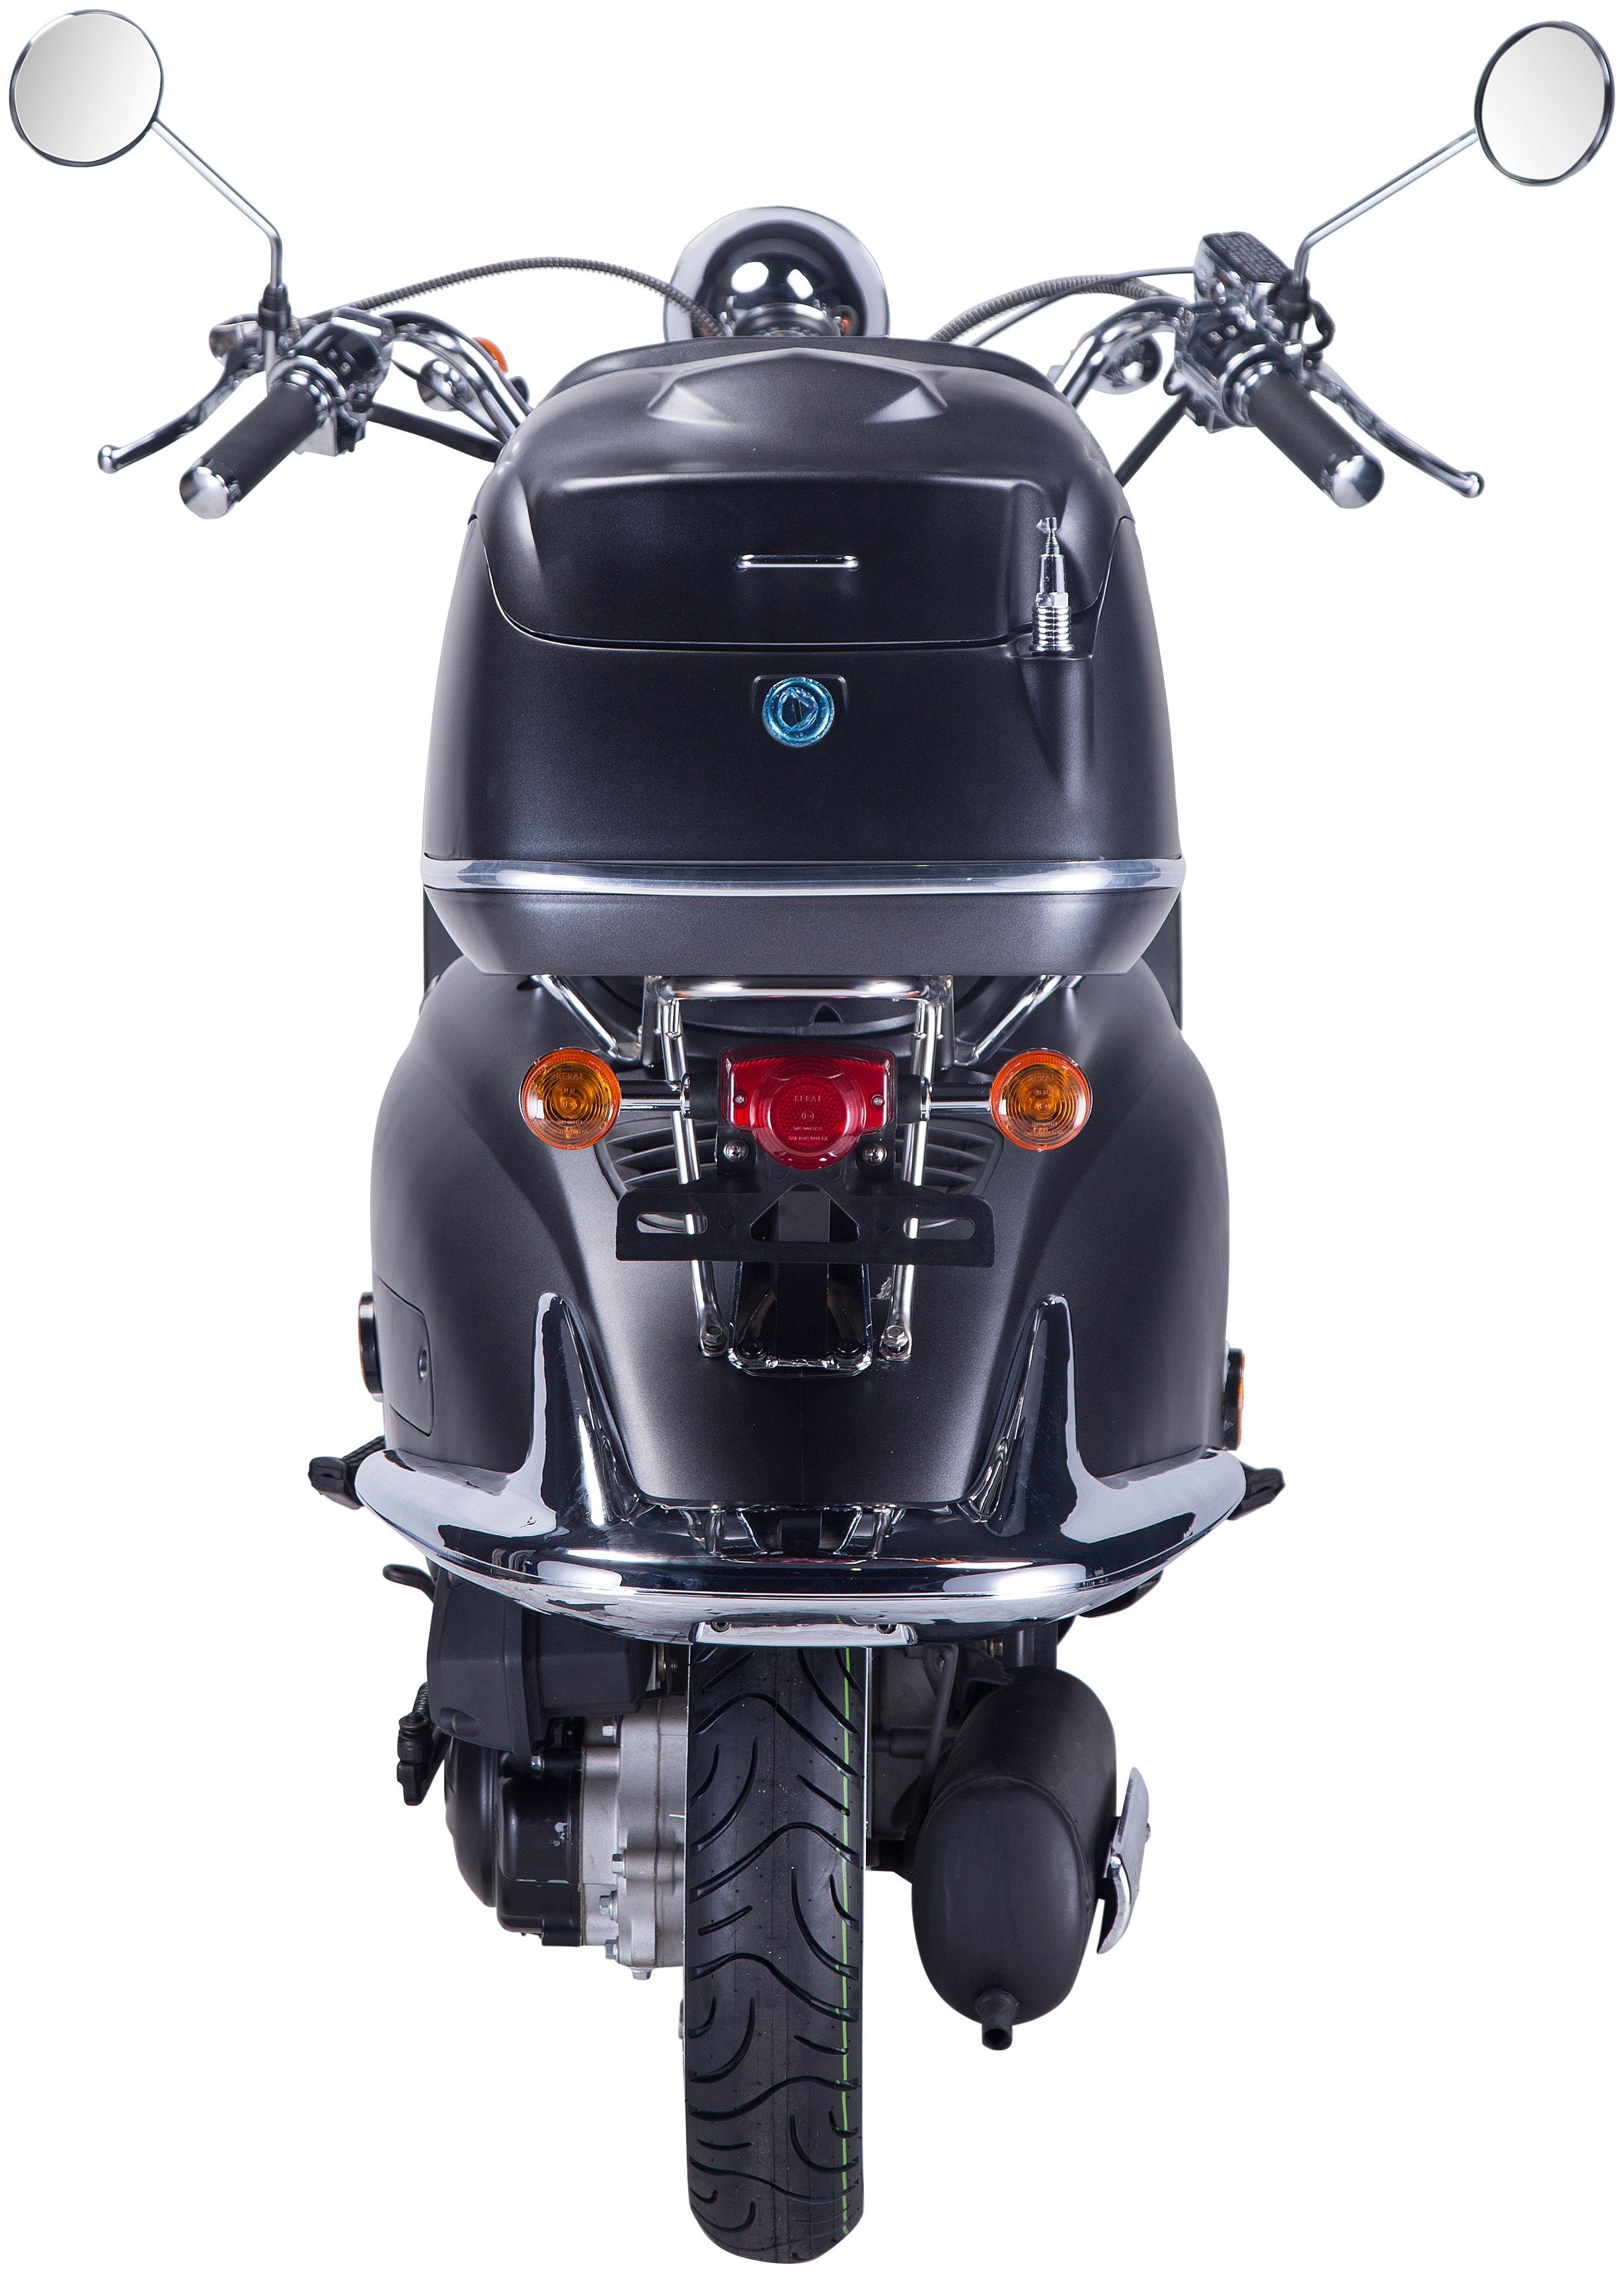 GT UNION Motorroller 5, 85 ccm, km/h, schwarz/silberfarben (Set), mit Euro 125 Topcase Strada